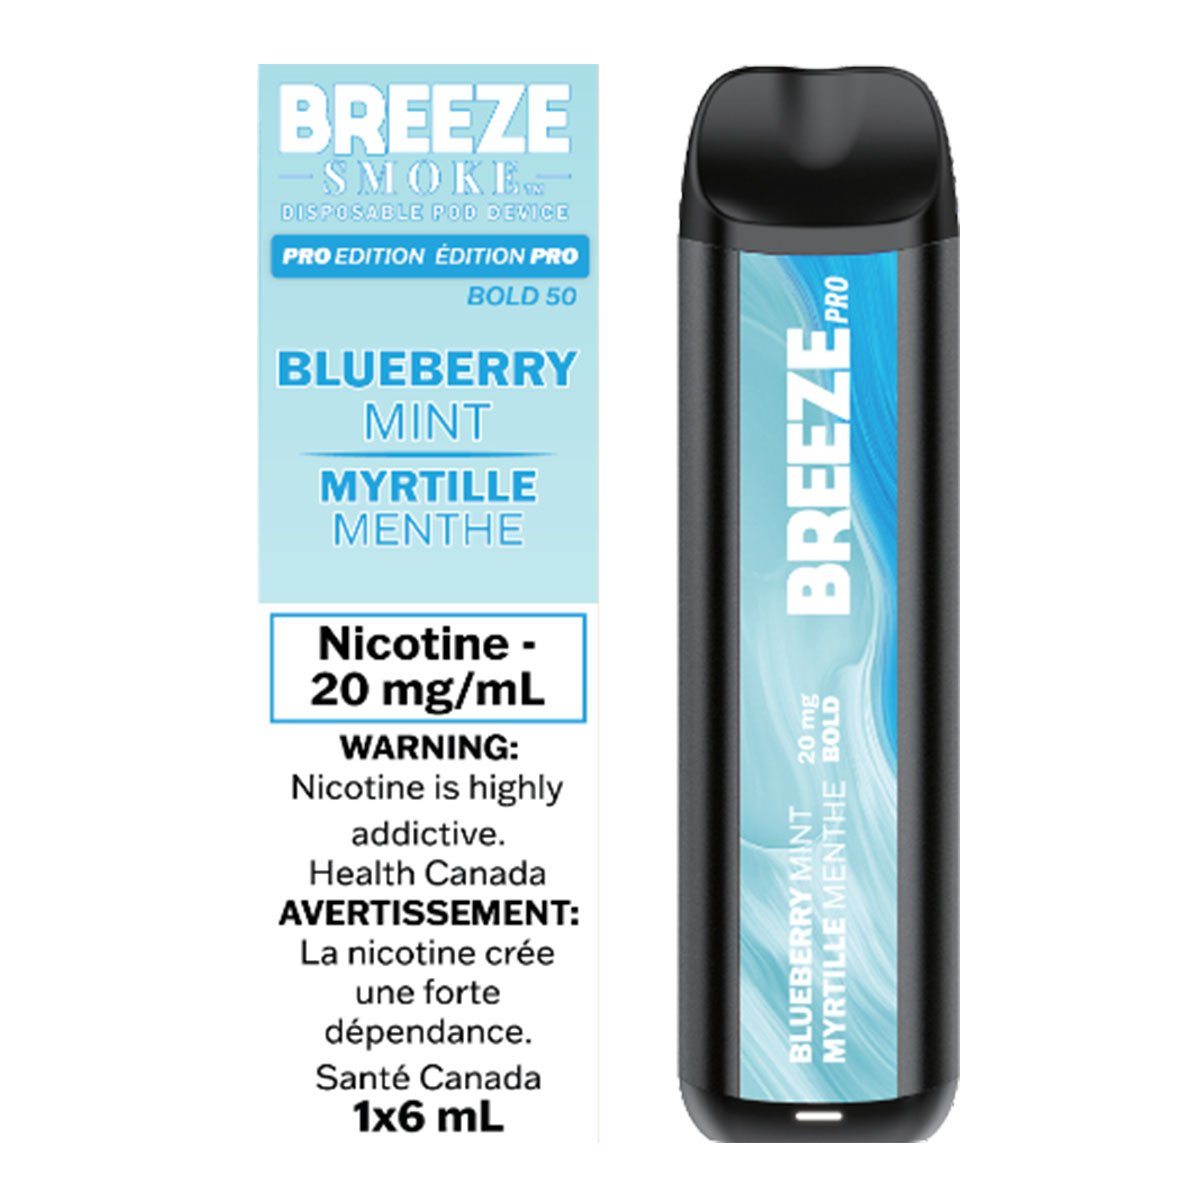 Breeze Pro - Blueberry Mint Disposable Breeze Smoke 20mg/mL (Bold 50) 